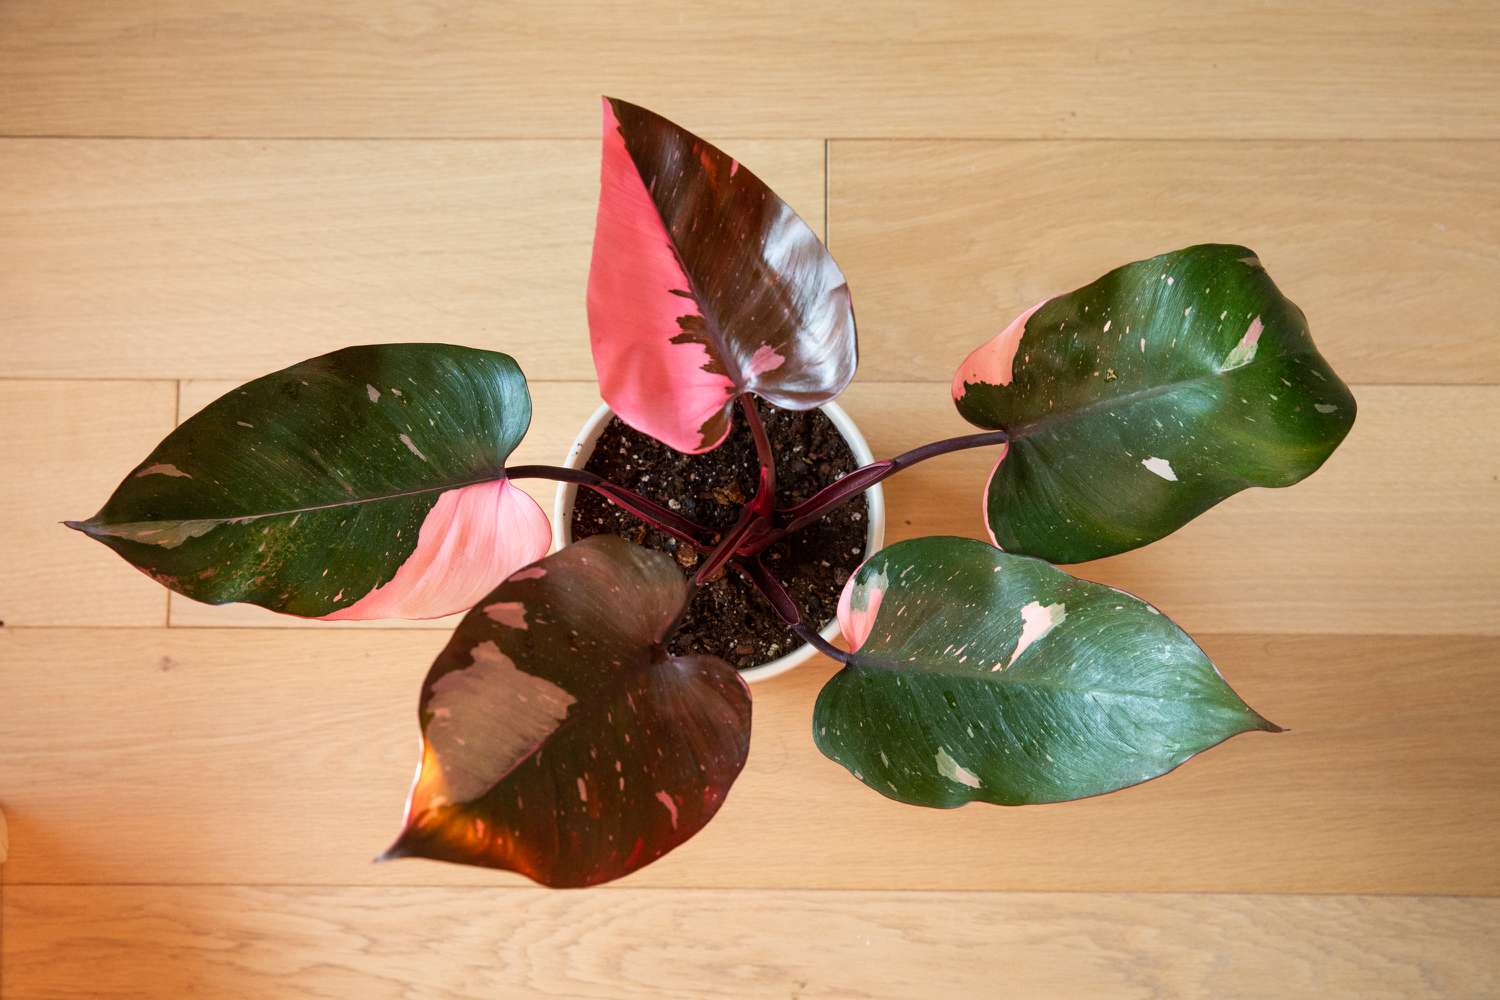 Planta filodendro princesa rosa con hojas variegadas rosas y verdes sobre suelo de madera